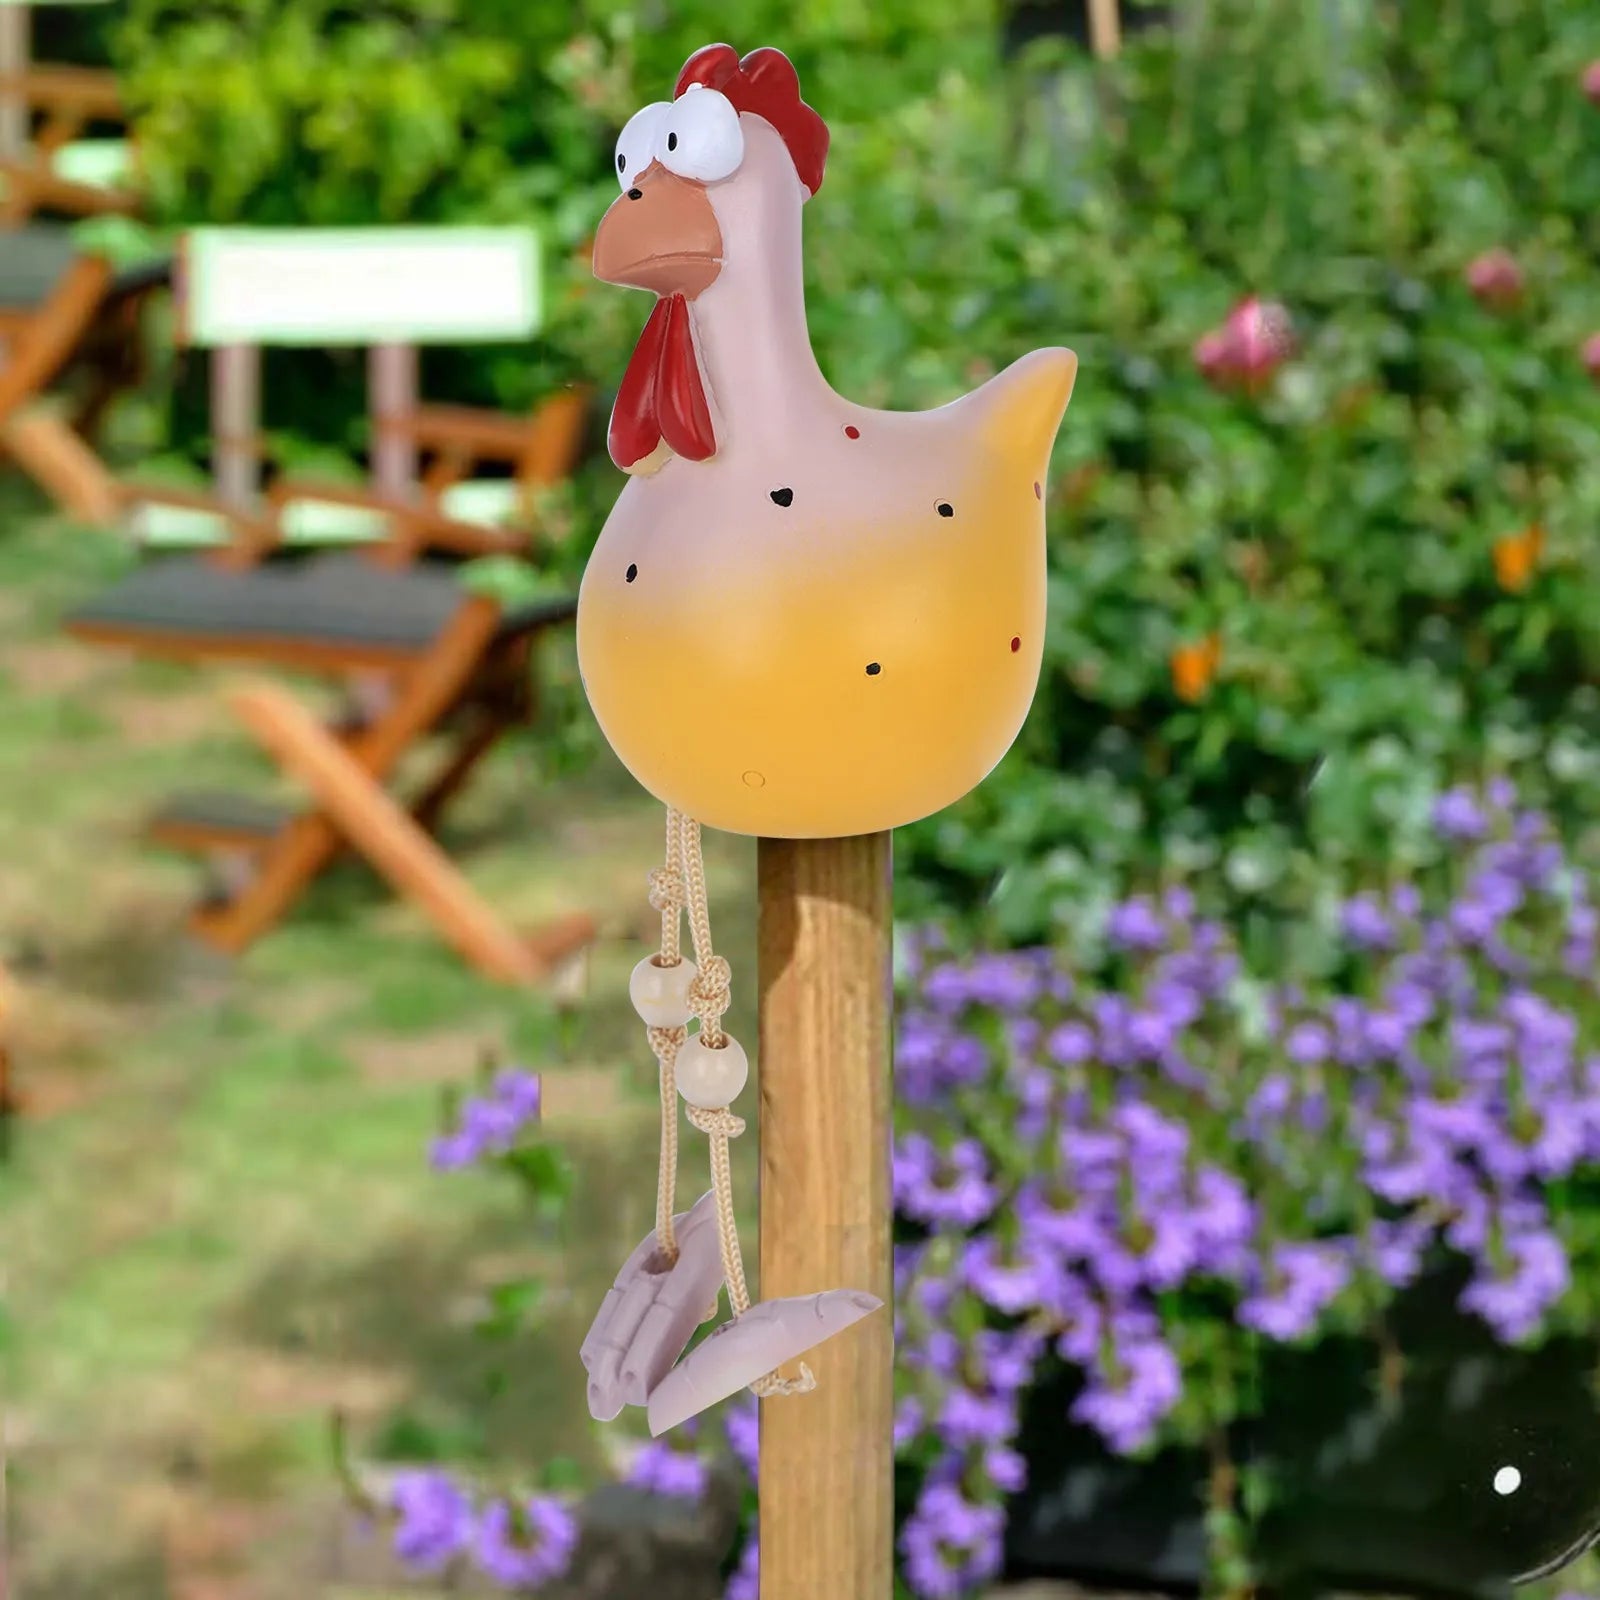 Dekorasi Dekorasi Taman Ayam Lucu Patung Resin Rumah Halaman Pertanian Dekorasi Chicken Hen Sculpture Art Craft Courtyard Housewarming